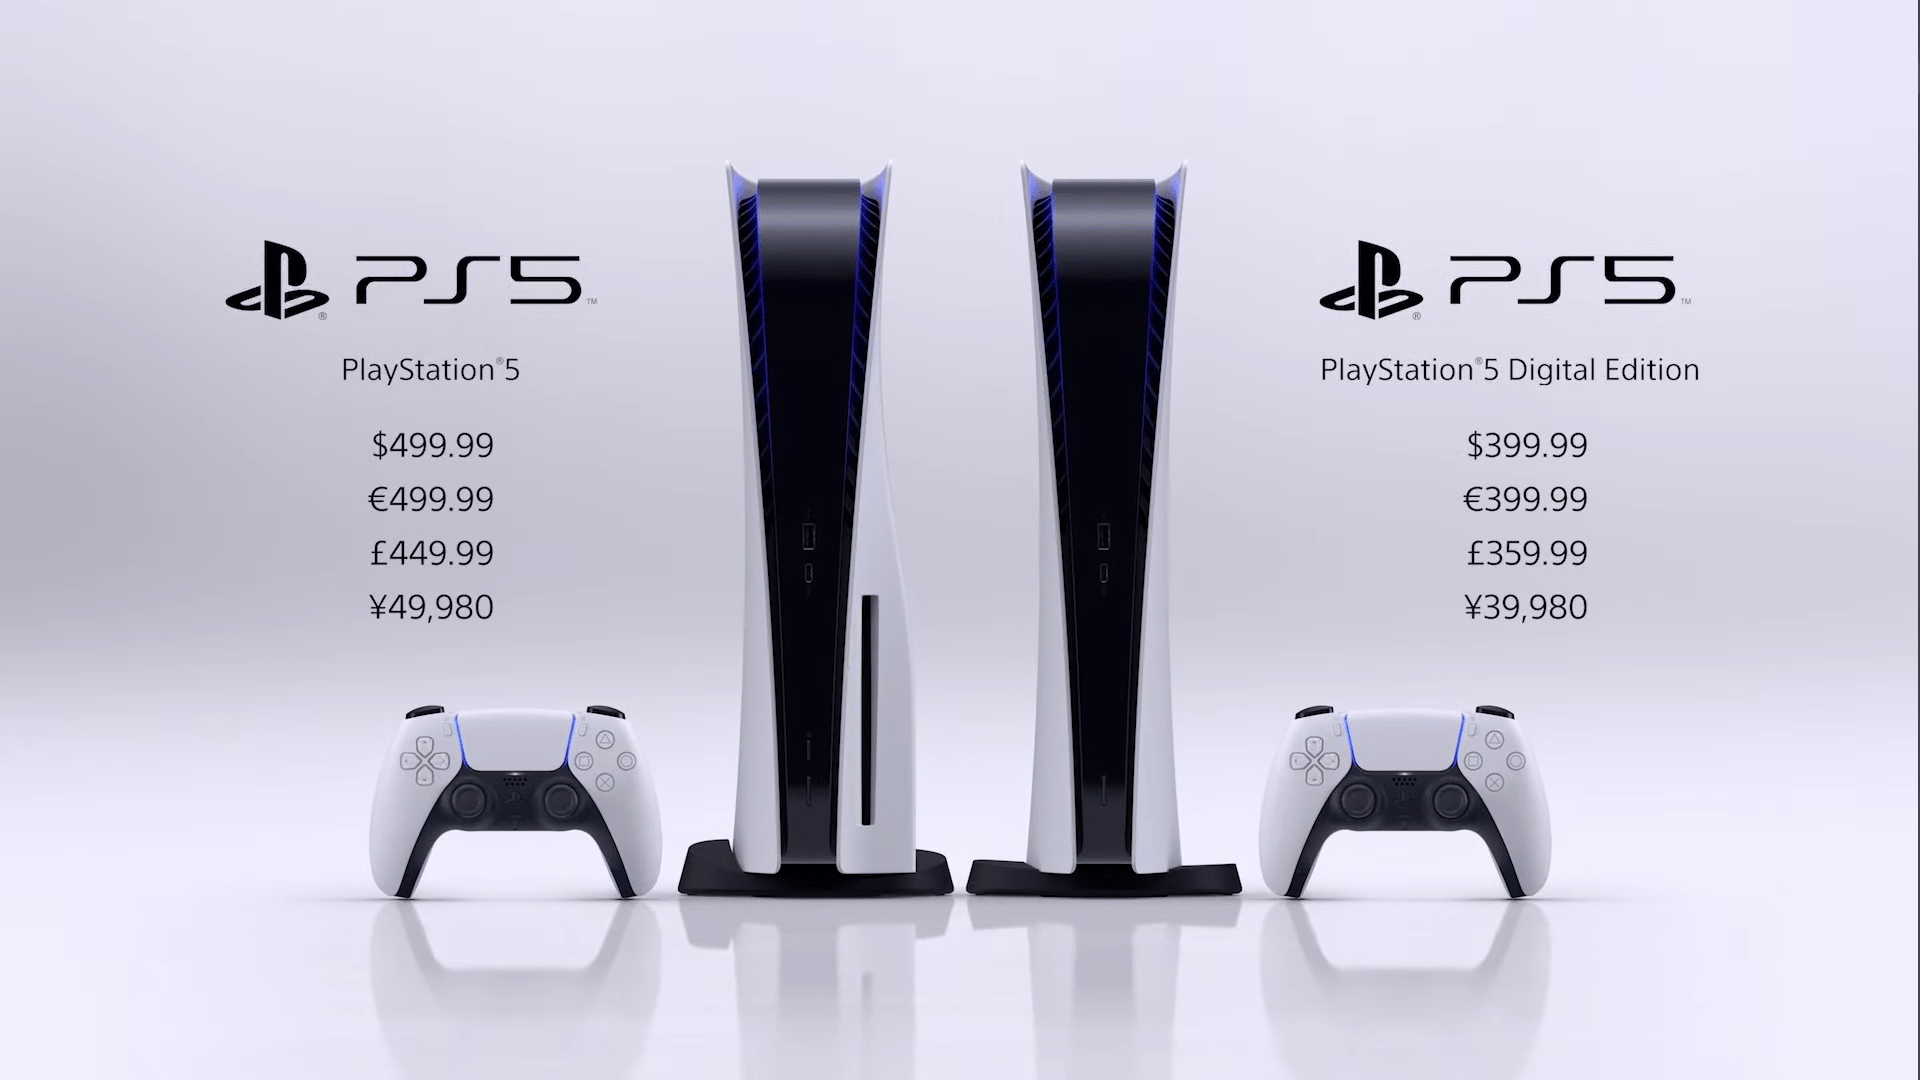 Precios de las diferentes ediciones de PlayStation 5